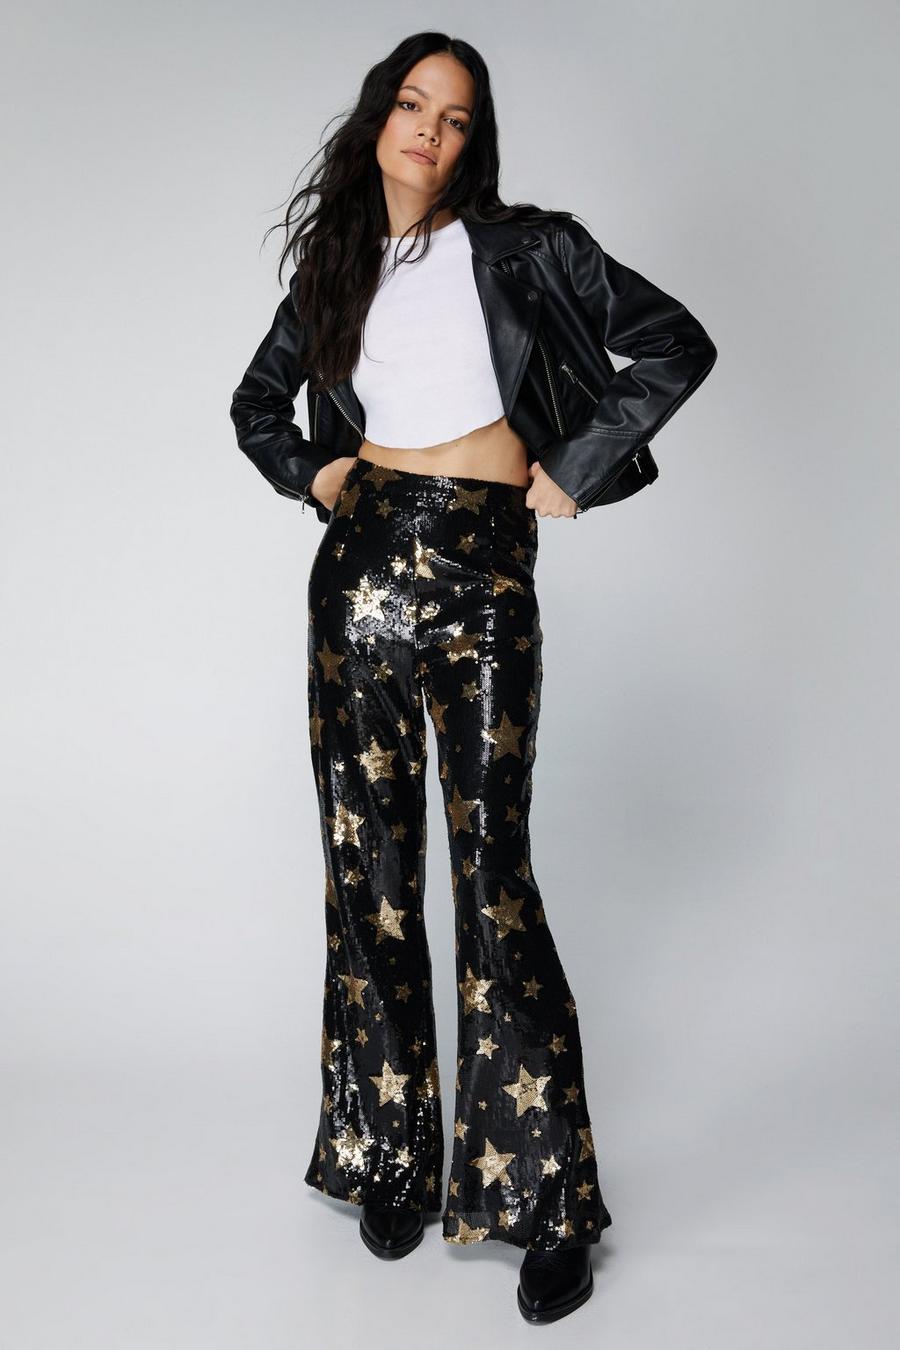 Elegant and Sparkling Black Sequin Flare Pants